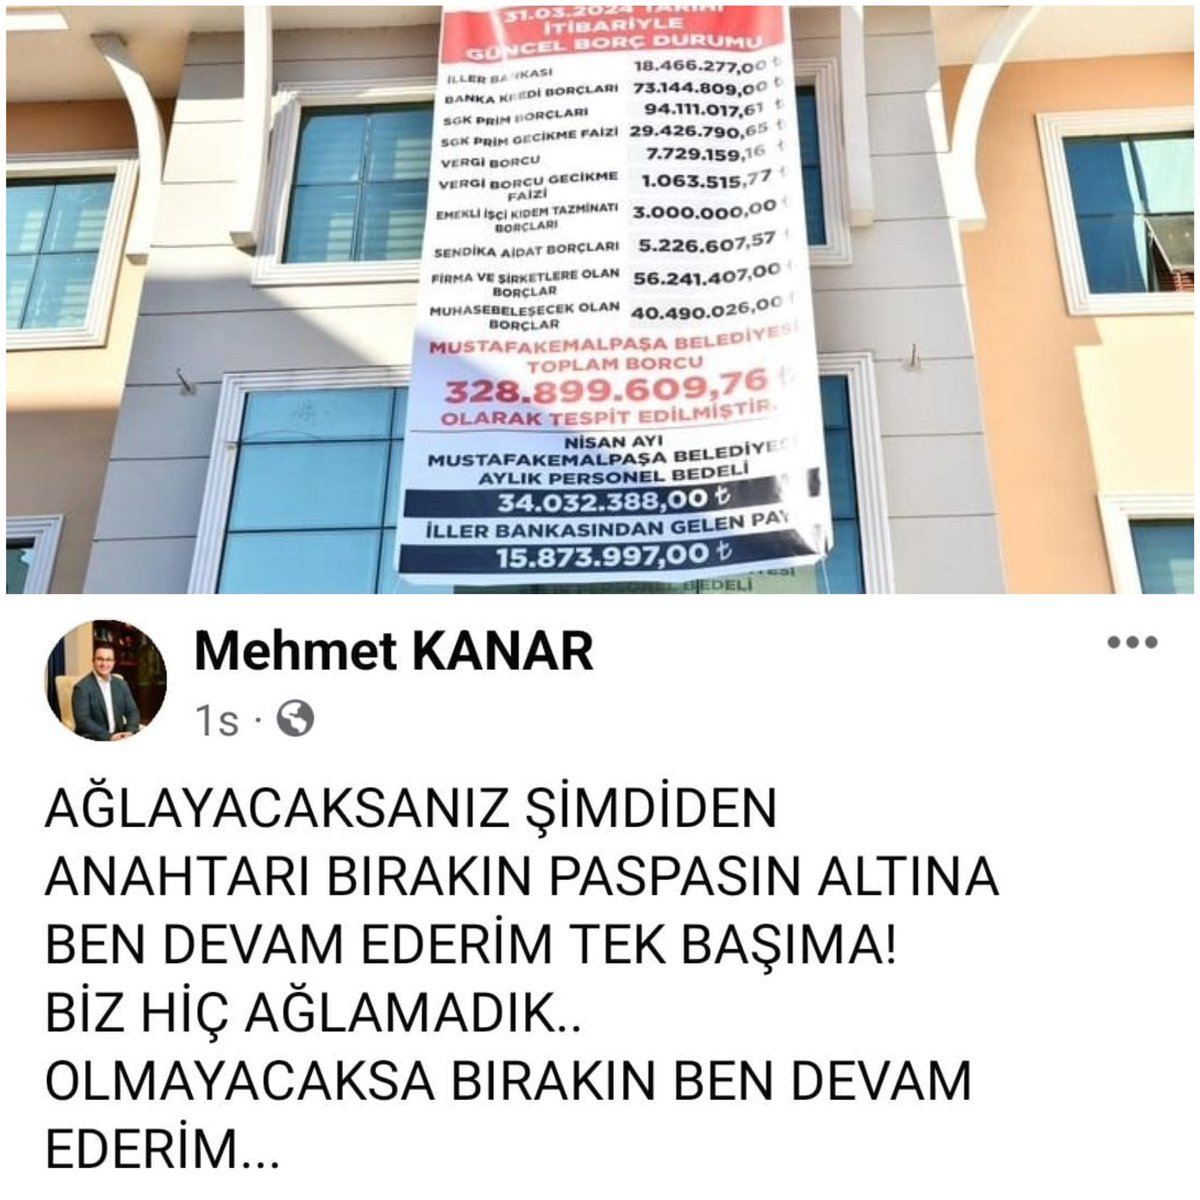 AKP’den CHP’ye geçen Mustafakemalpaşa Belediyesi’nin 300 milyonun üzerinde borcu olduğu ortay çıktı. Borç miktarı asılan afişle halka duyurulunca AKP’li eski başkan sosyal medya hesabından, “Ağlayacaksanız anahtarı bırakın” yazdı.